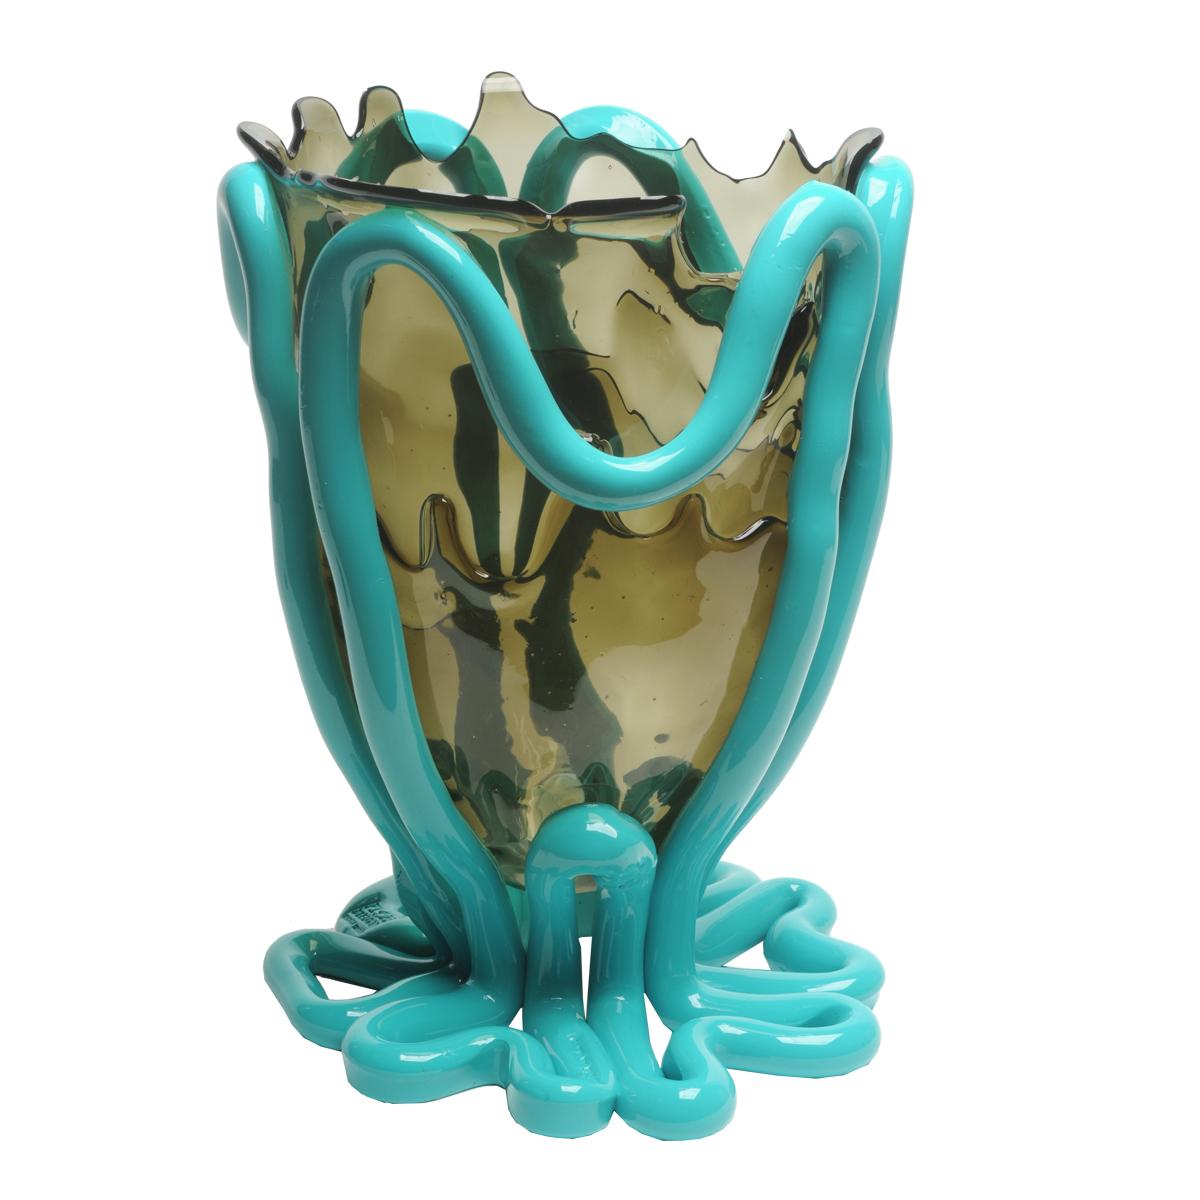 Indian Summer Vase - Hellgrau und mattes Türkis

Vase aus weichem Harz, entworfen von Gaetano Pesce im Jahr 1995 für die Collection'S Fish Design.
Maße: L - ø 22cm x H 36cm
Farben: Hellgrau und mattes Türkis.

Andere Größen verfügbar.

Vase aus